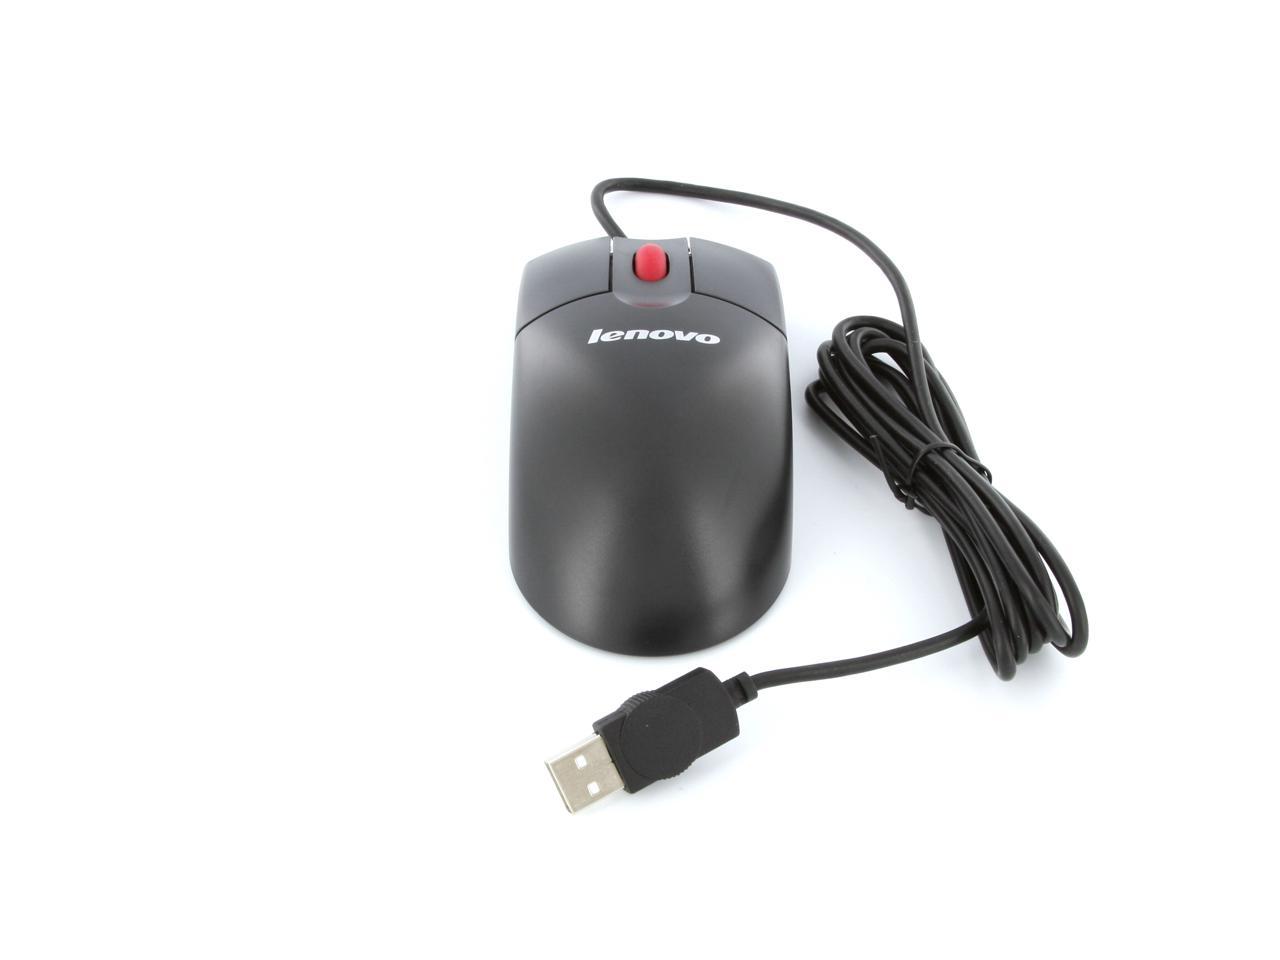 lenovo 06P4069 Black Wired Optical Mouse - Newegg.com